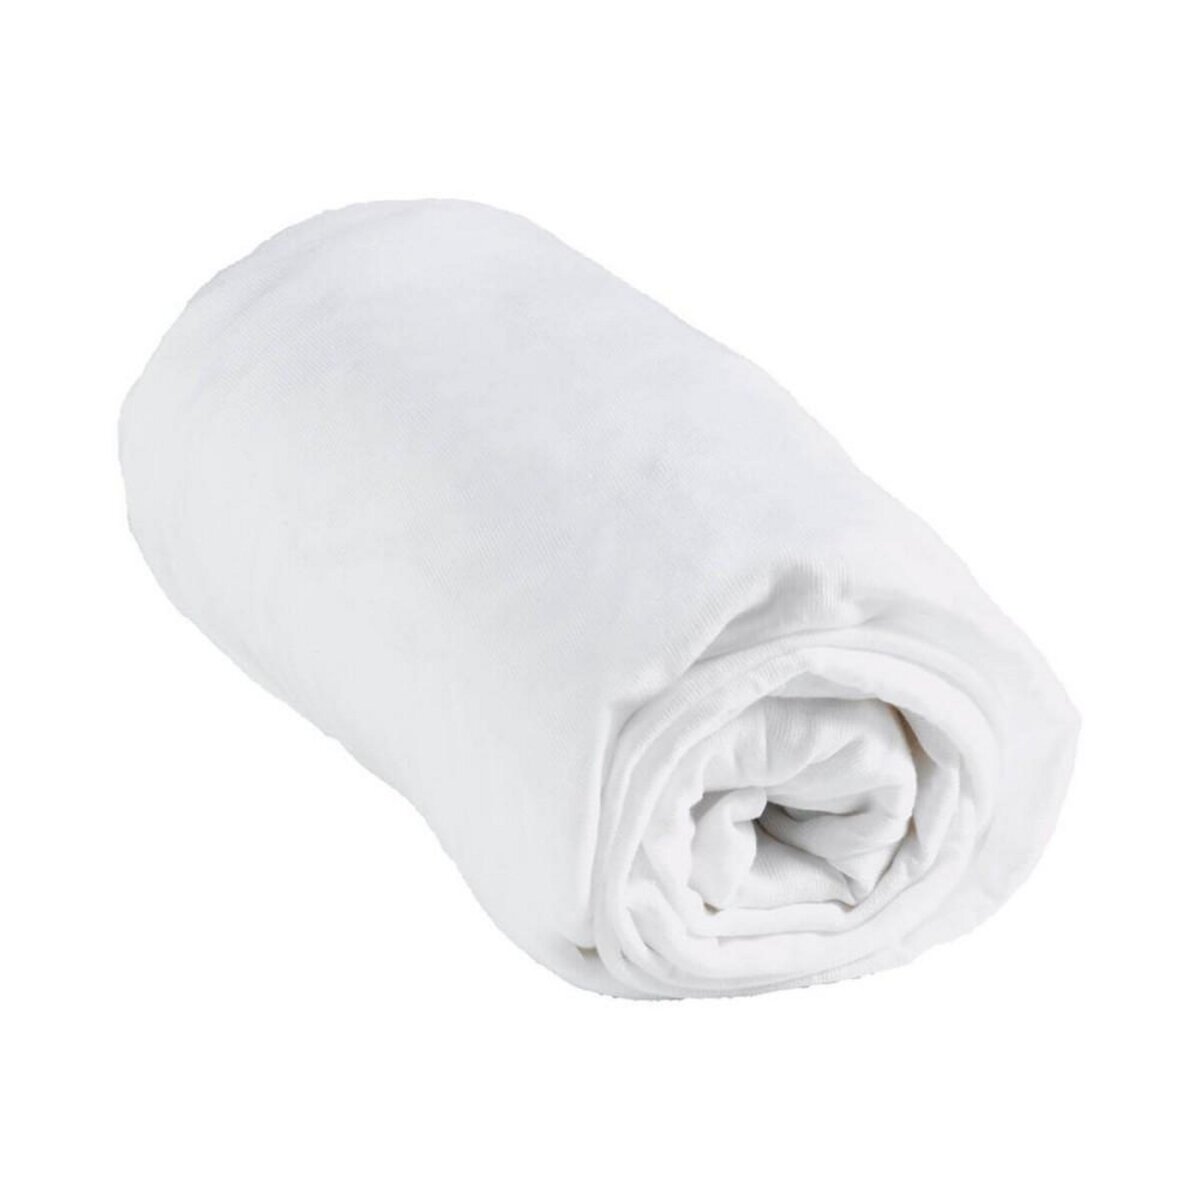 Homea décoration Protège matelas bébé imperméable 70x140 cm confort blanc